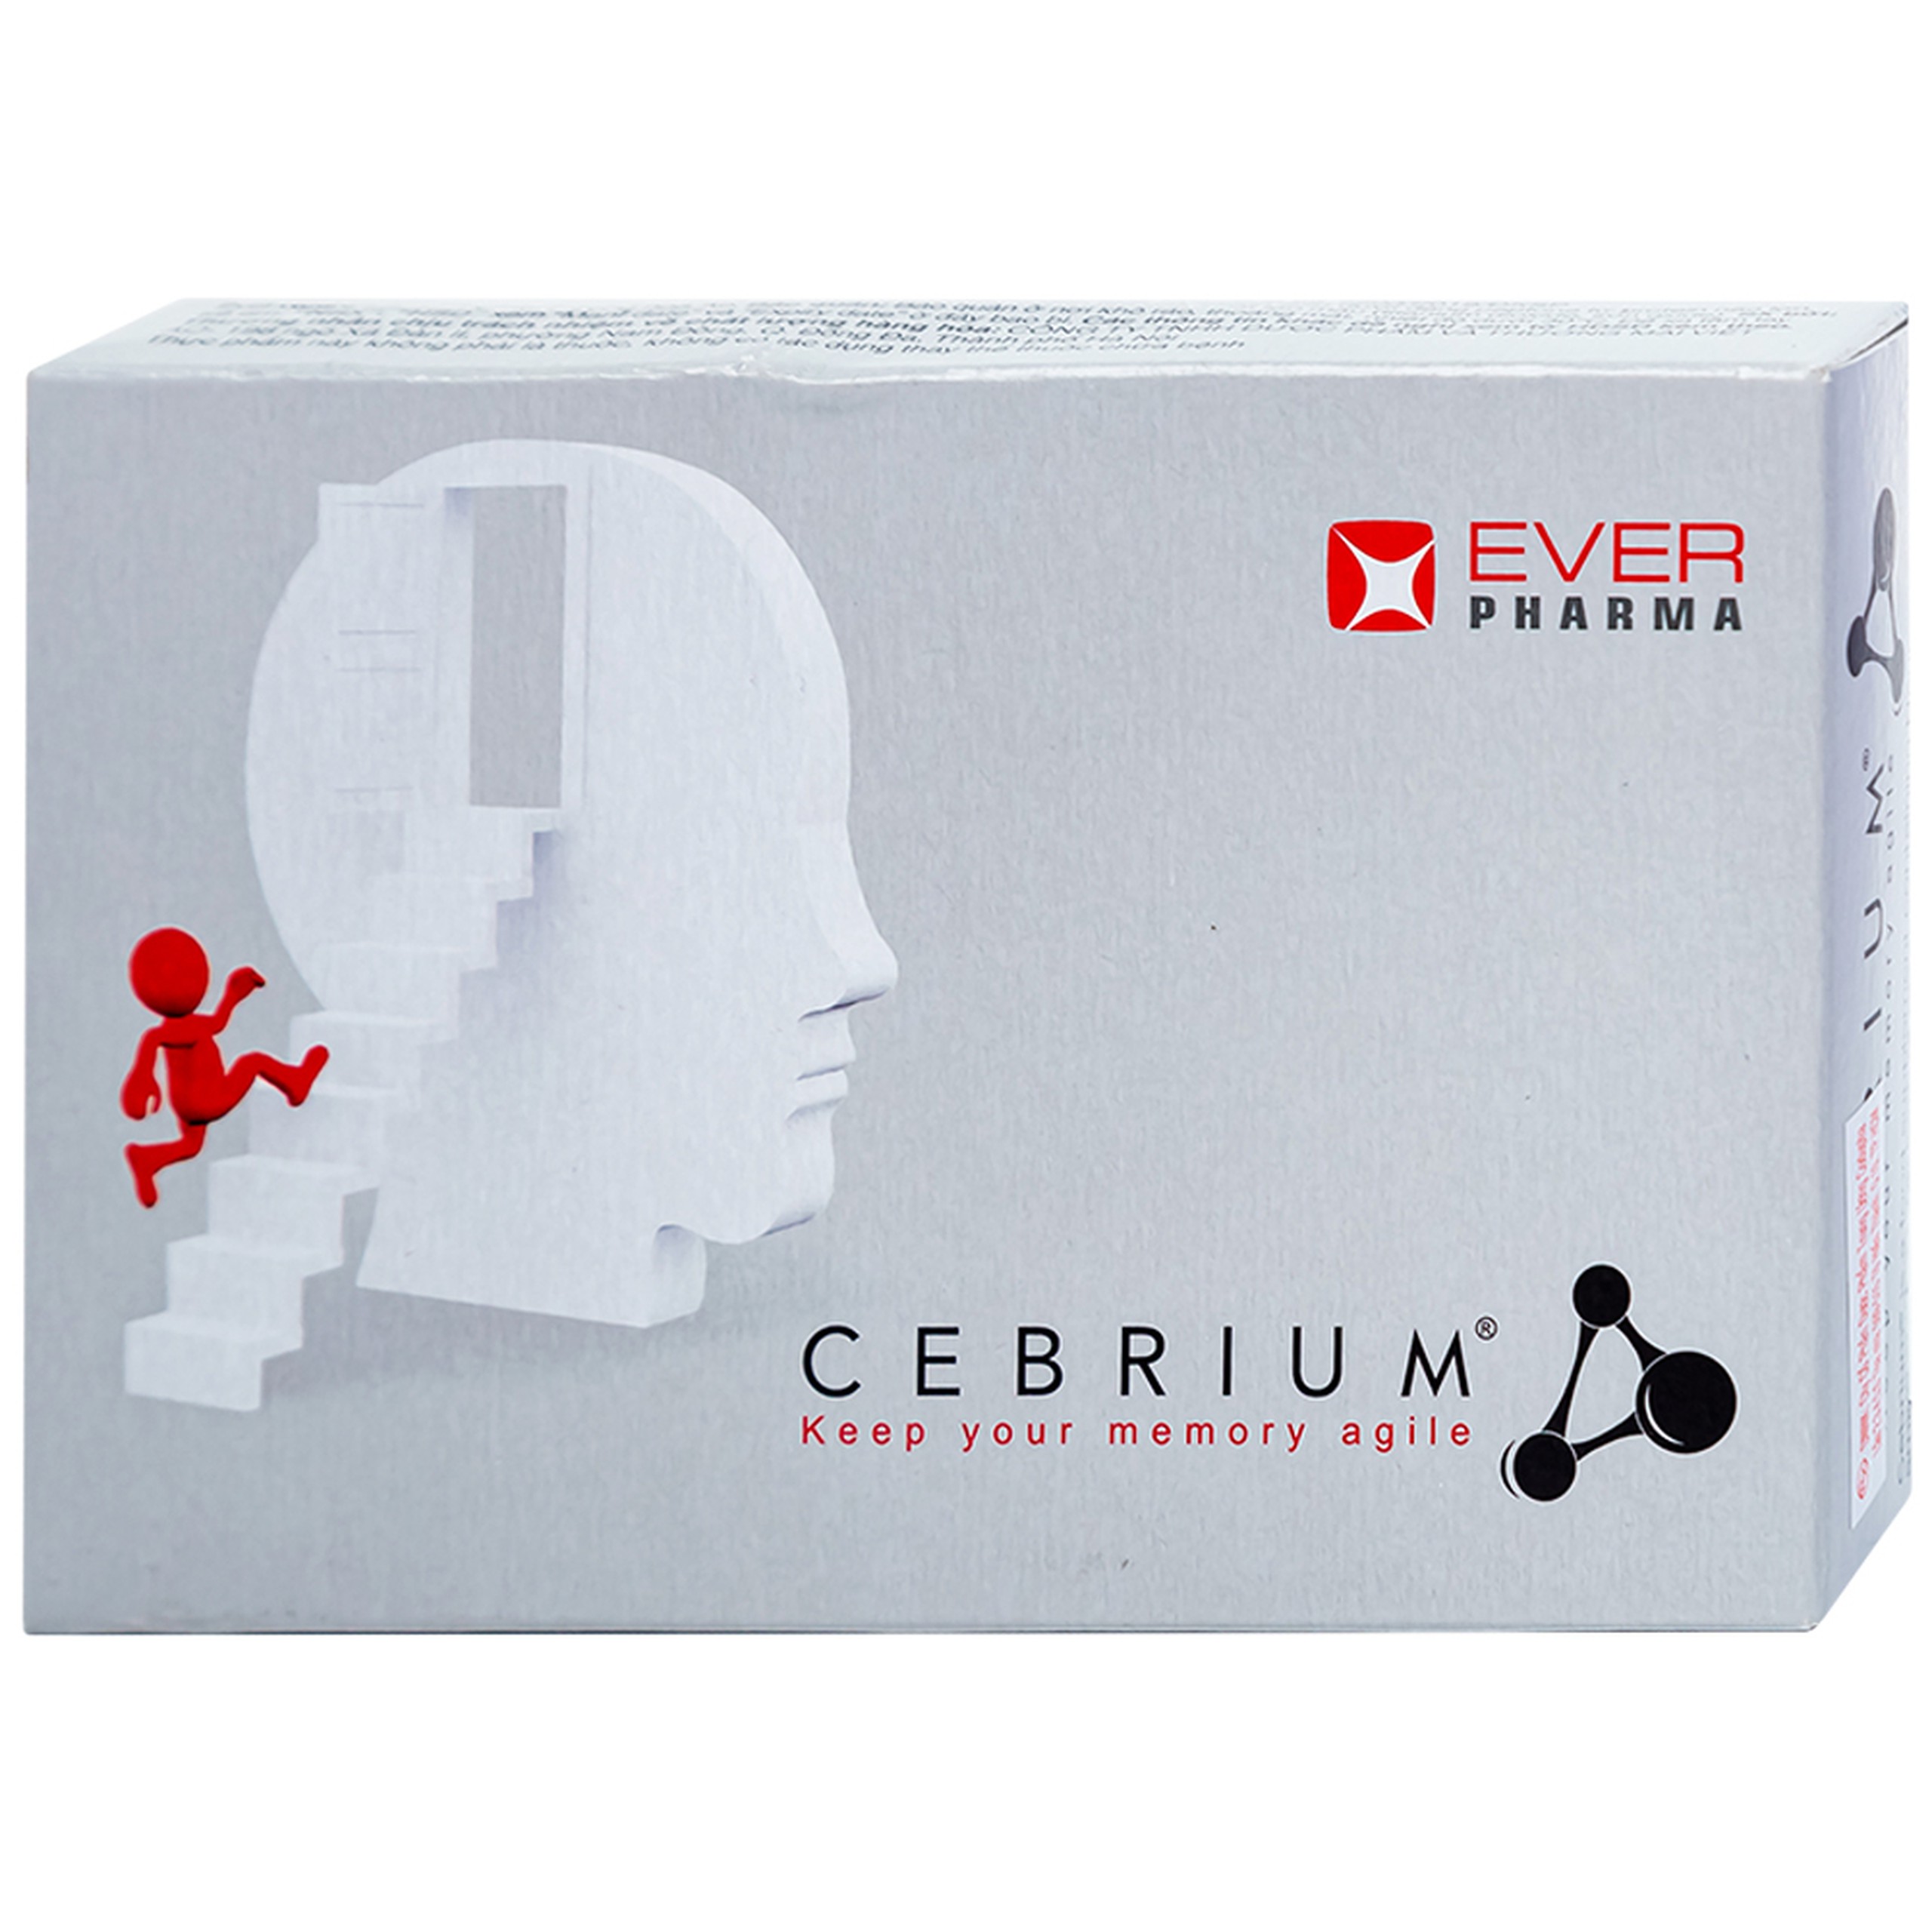 Viên uống Cebrium Ever Pharma hỗ trợ tăng khả năng tập trung, cải thiện trí nhớ (3 vỉ x 10 viên)